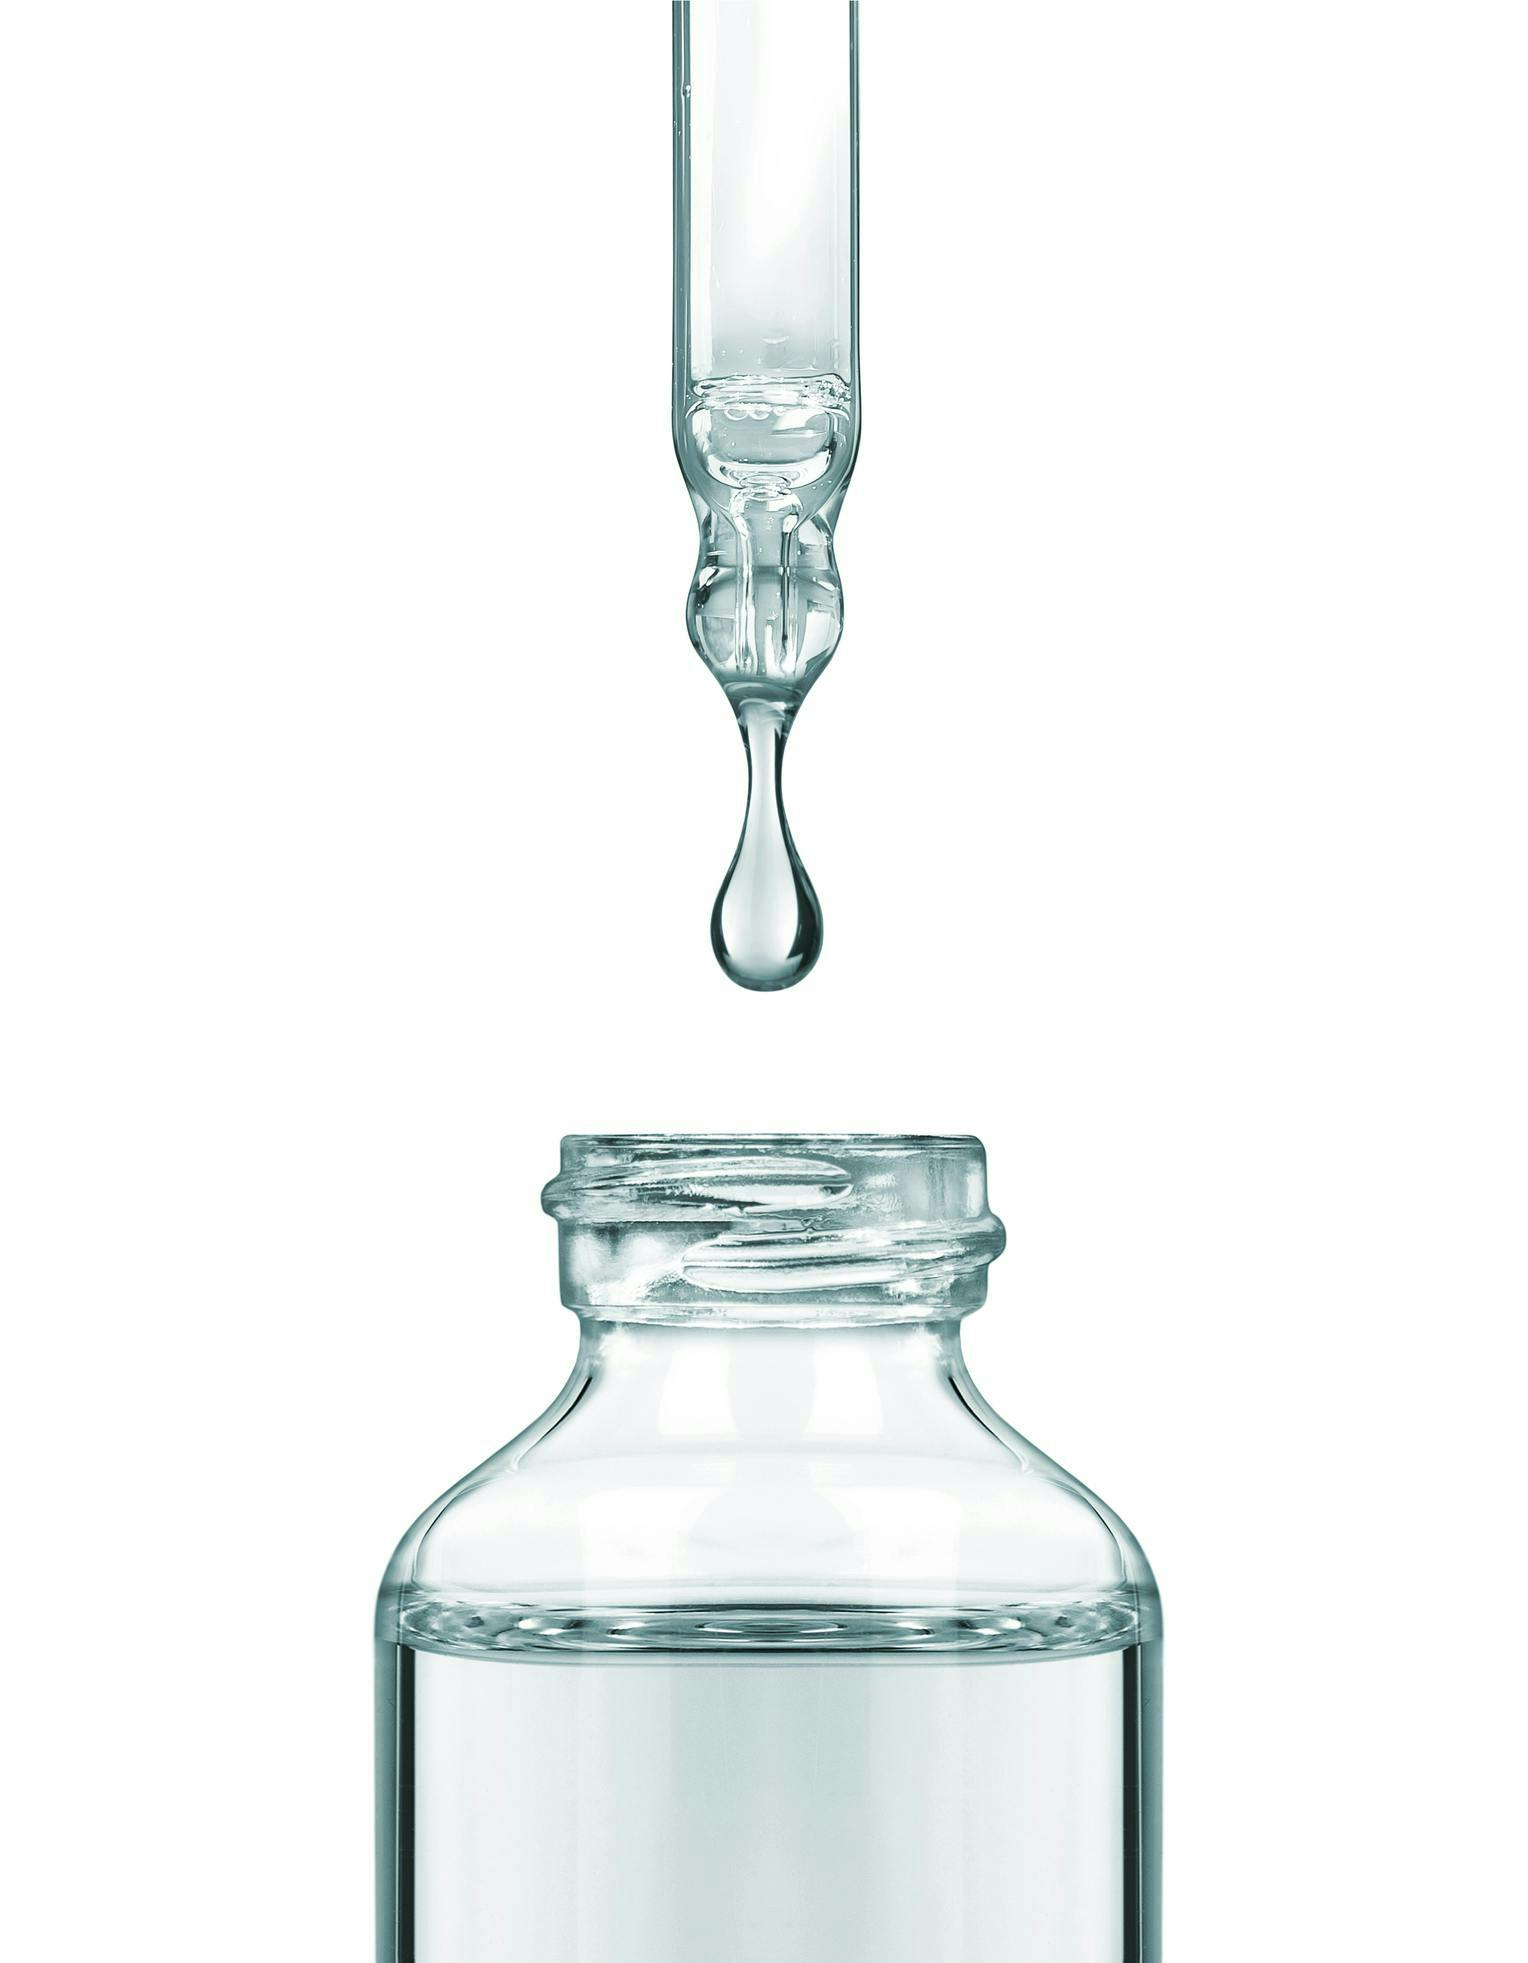 ampoule bottle glass mixer appliance water bottle